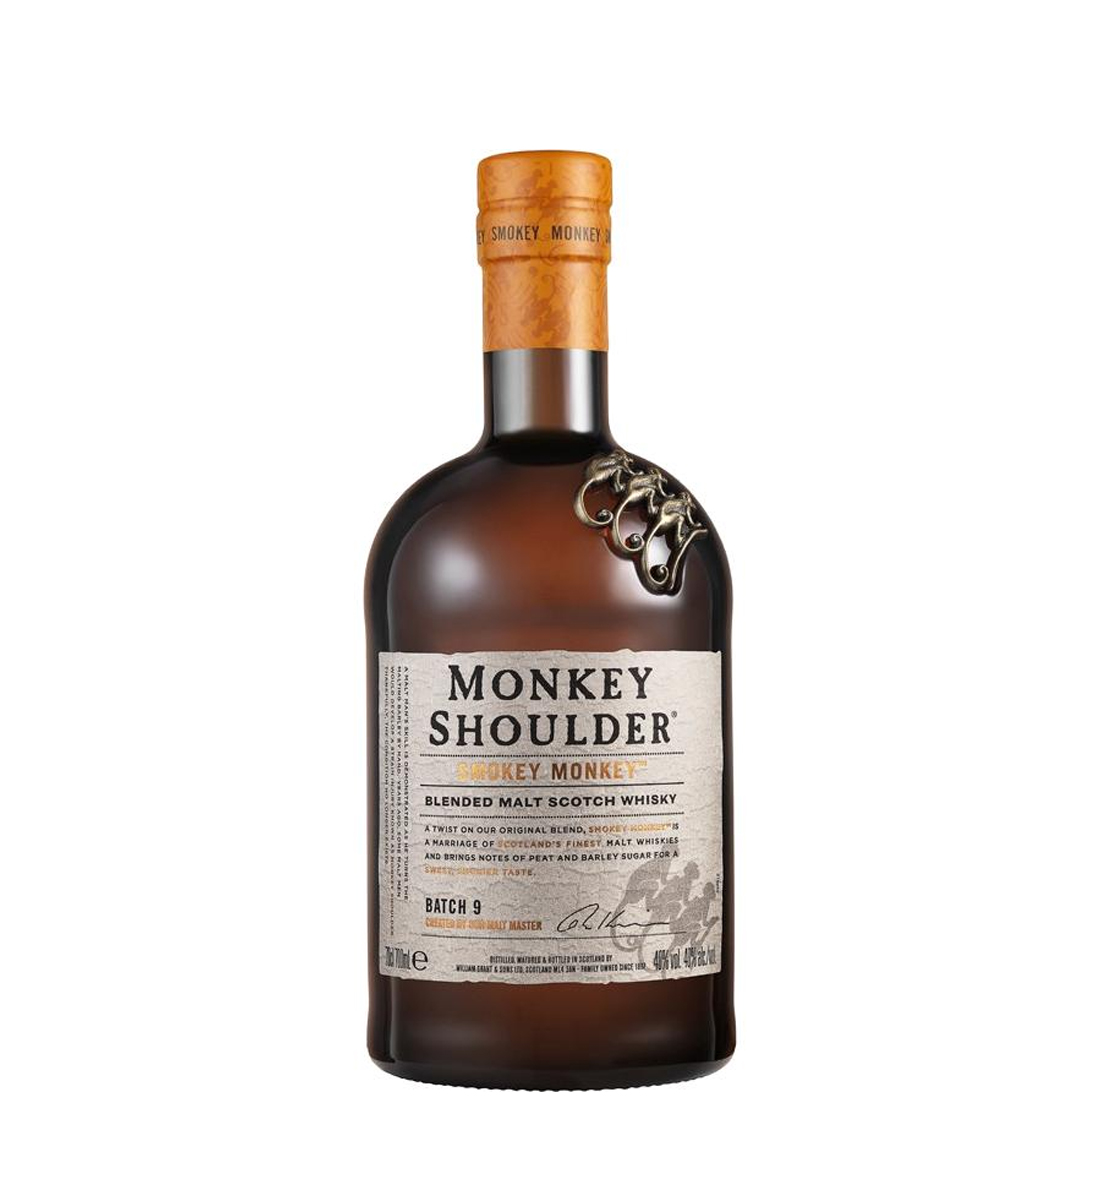 Monkey Shoulder Smokey Monkey Whisky 0.7L 0.7L